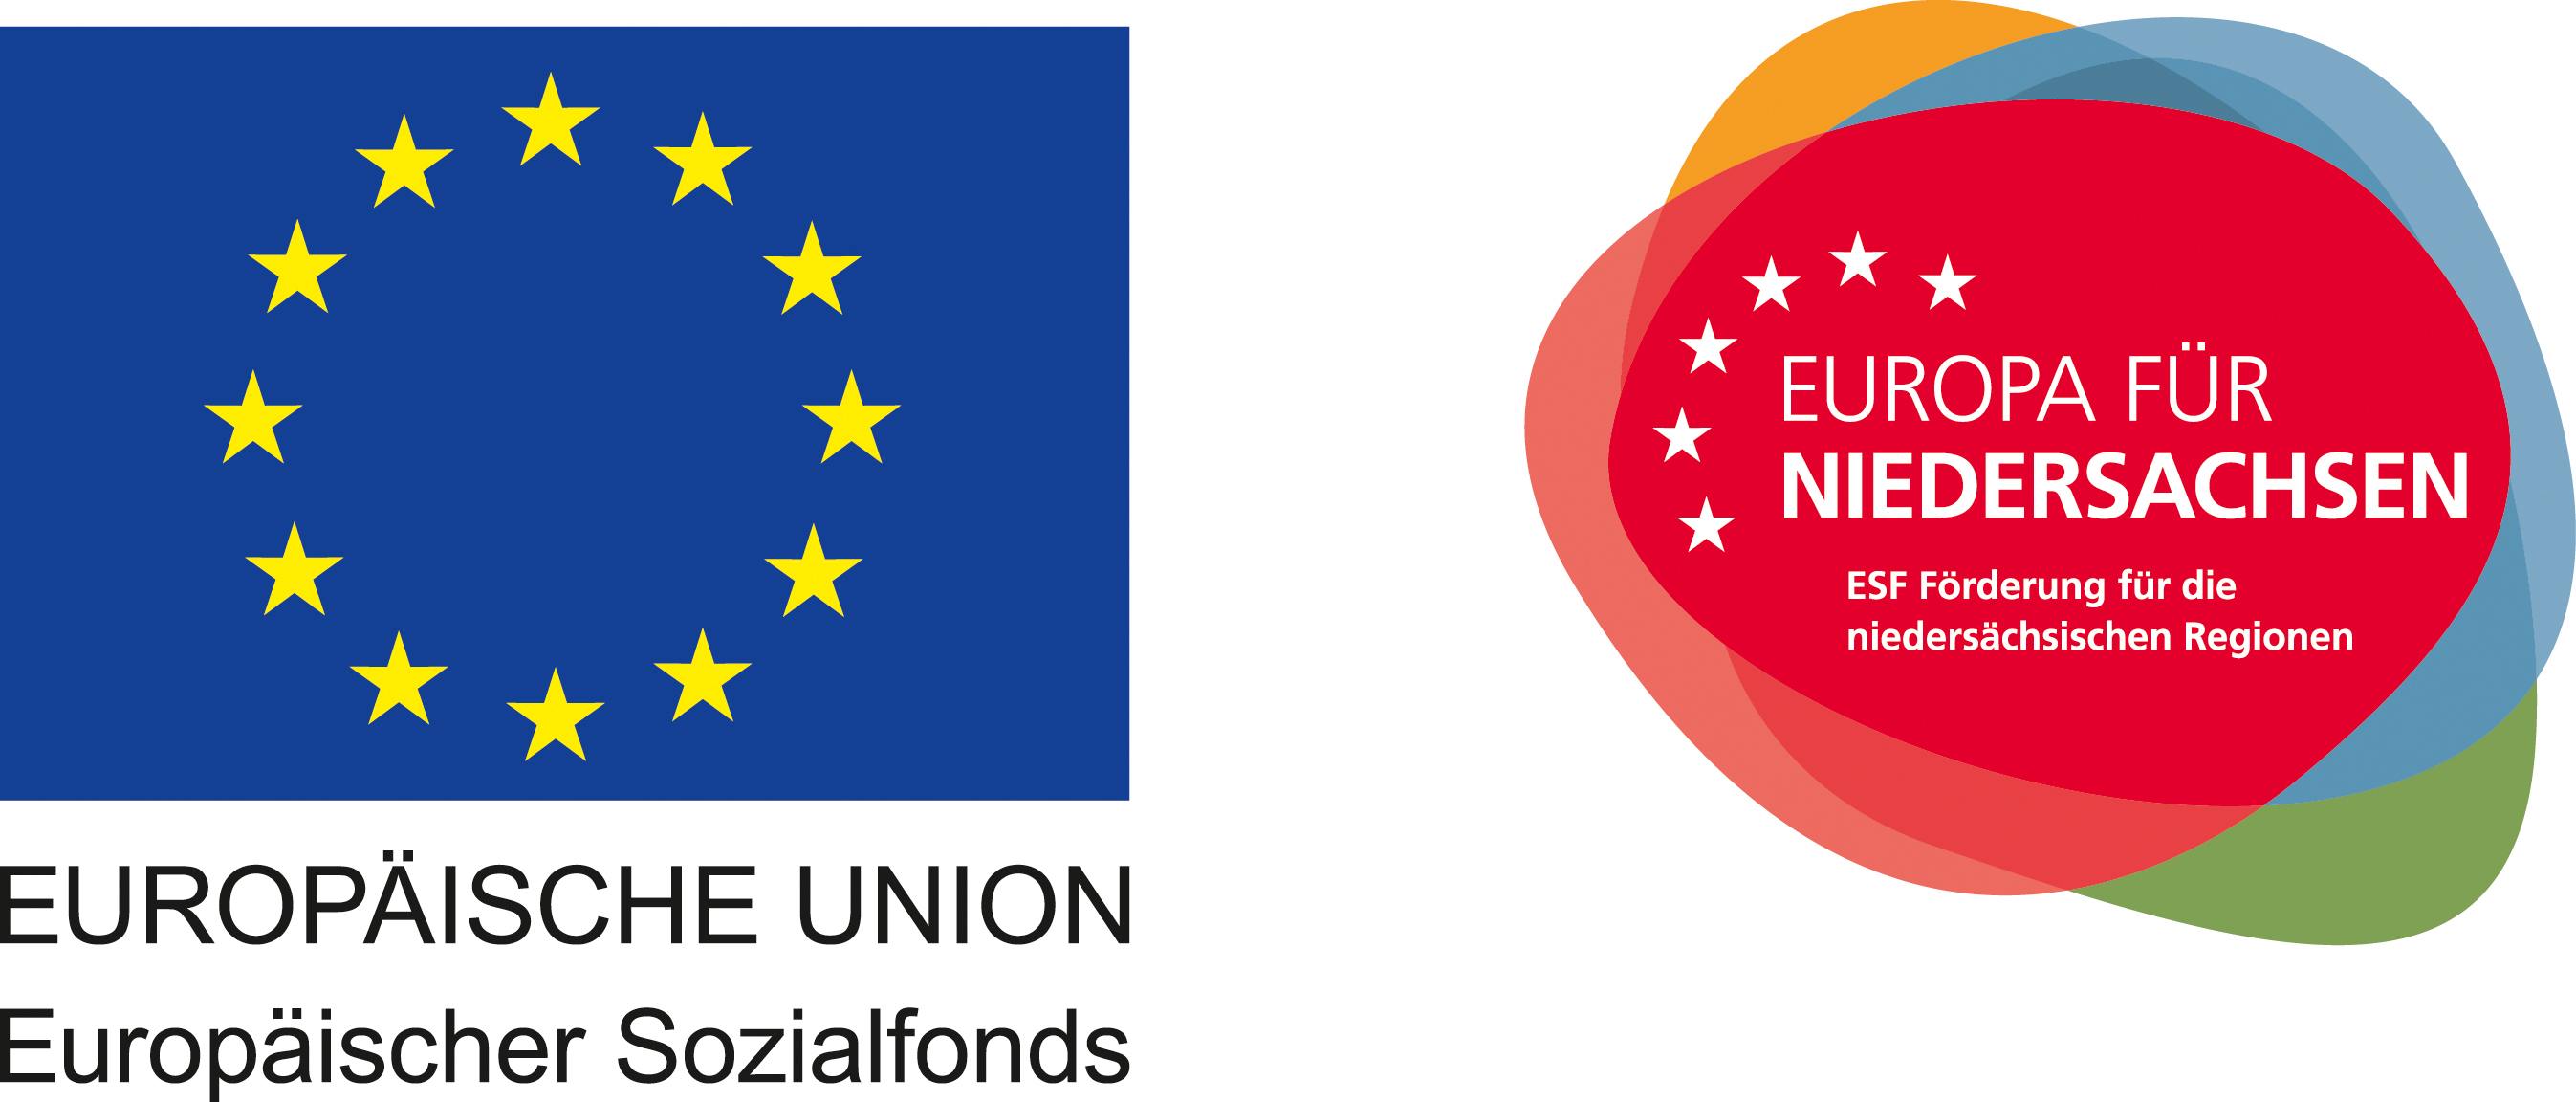 EUROPÄISCHE UNION - Europäischer Sozialfonds